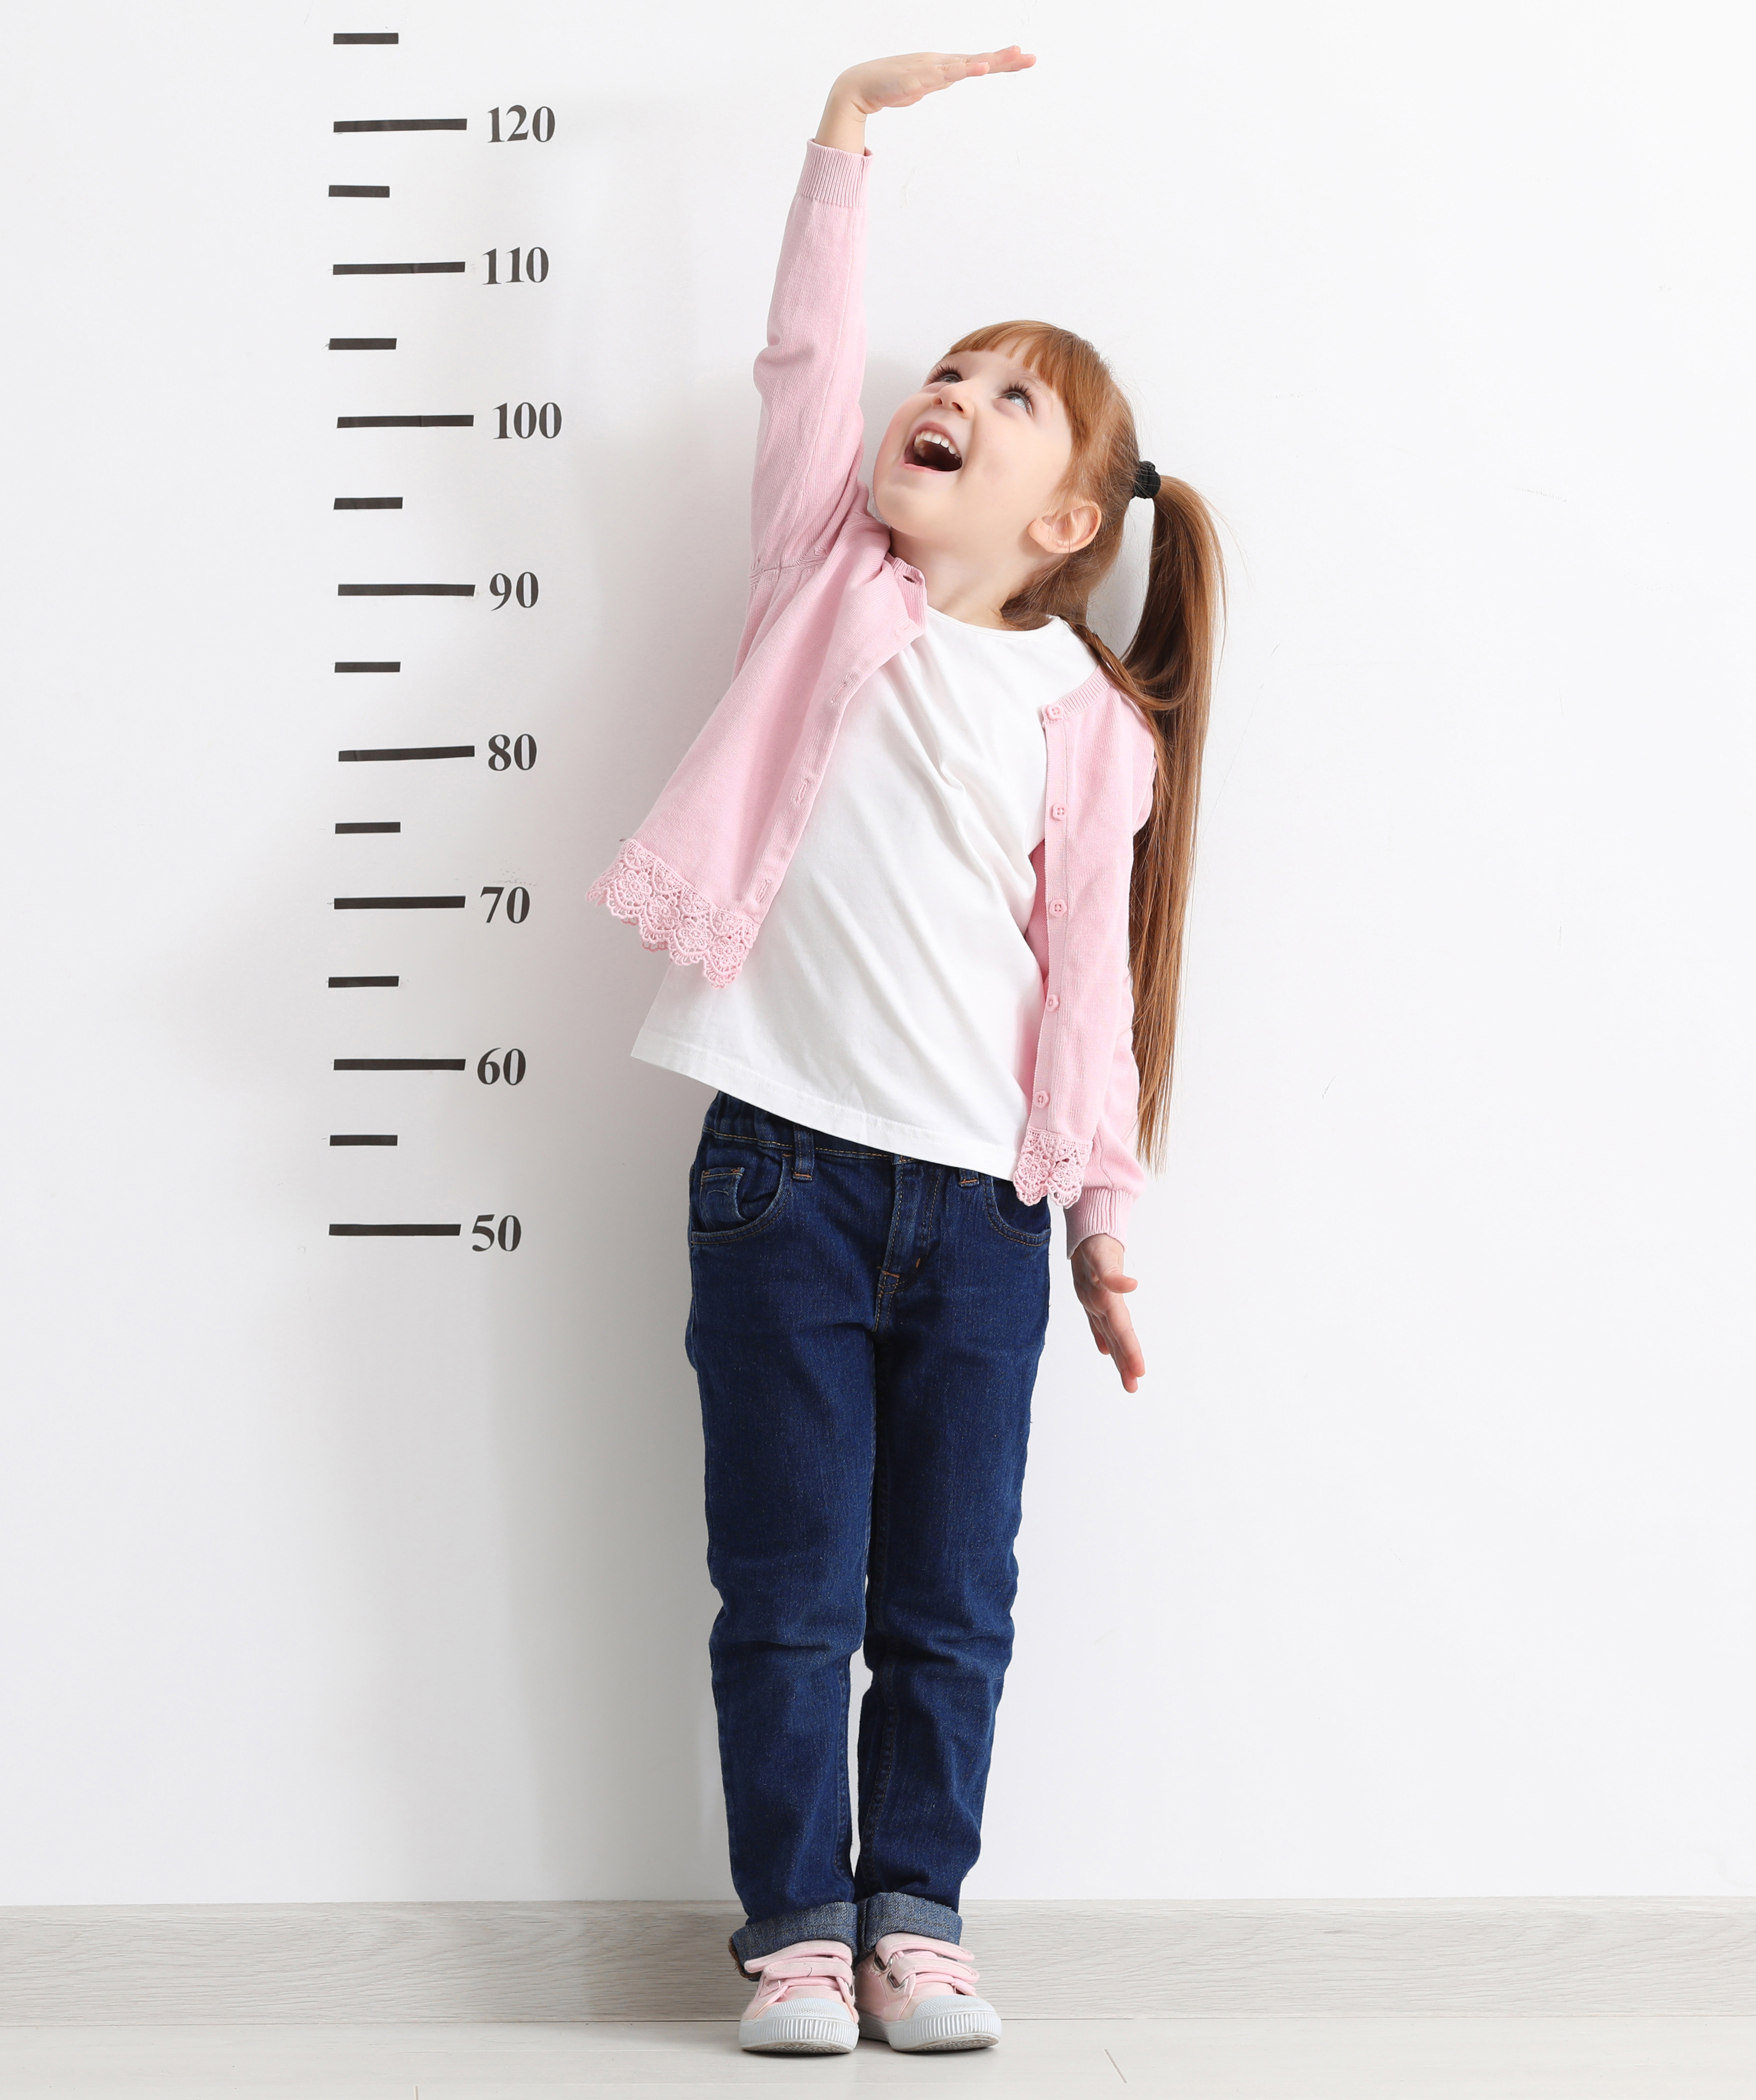 5 9 tall. Ребенок меряет рост. Ребенок измеряет рост. Ростомер. Измерение роста школьников.